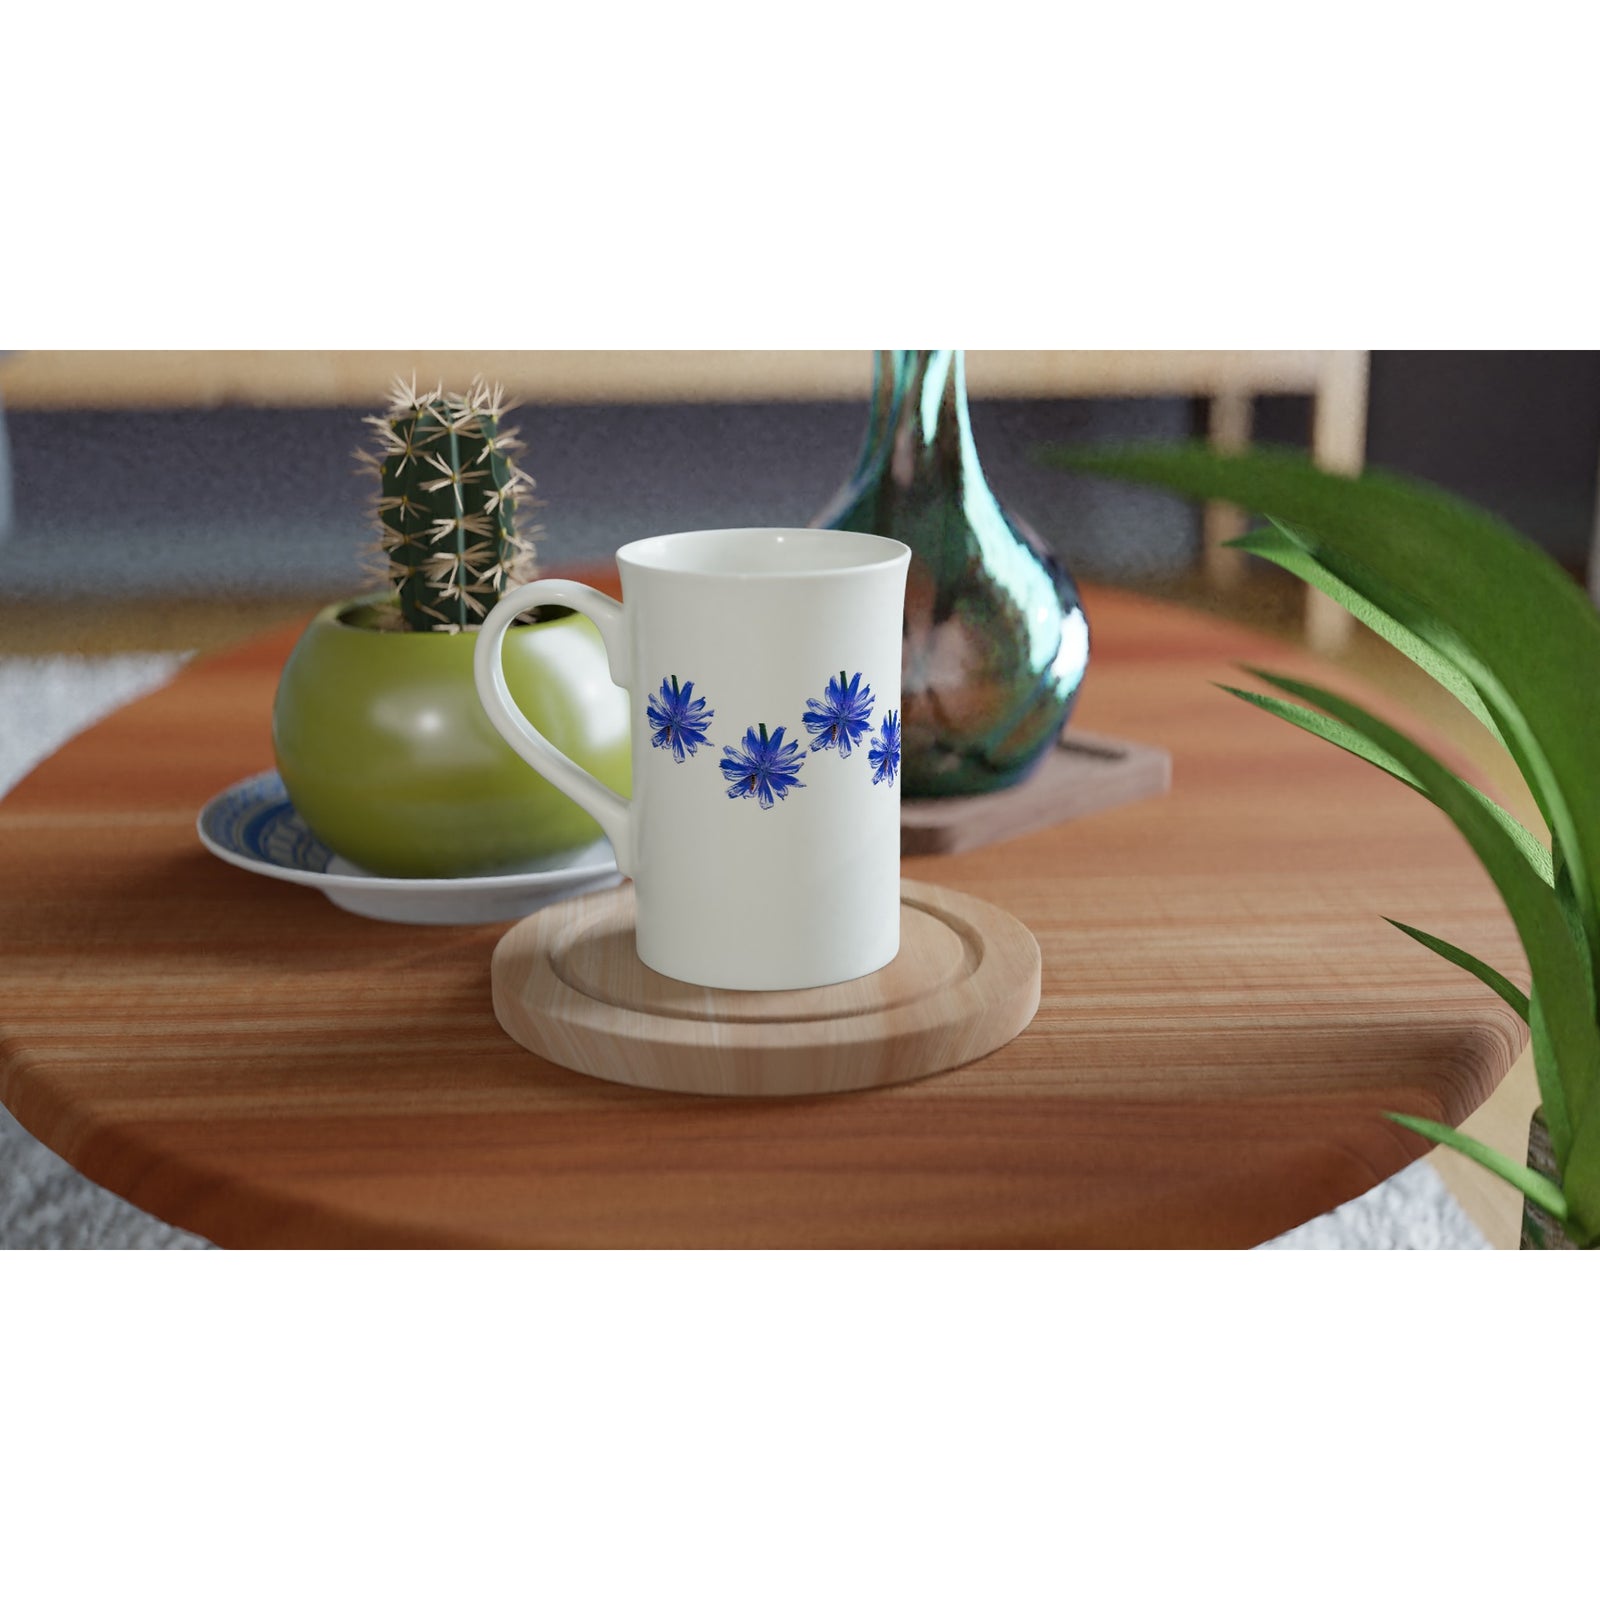 10 oz slim porcelain mug blue chicory floral pattern